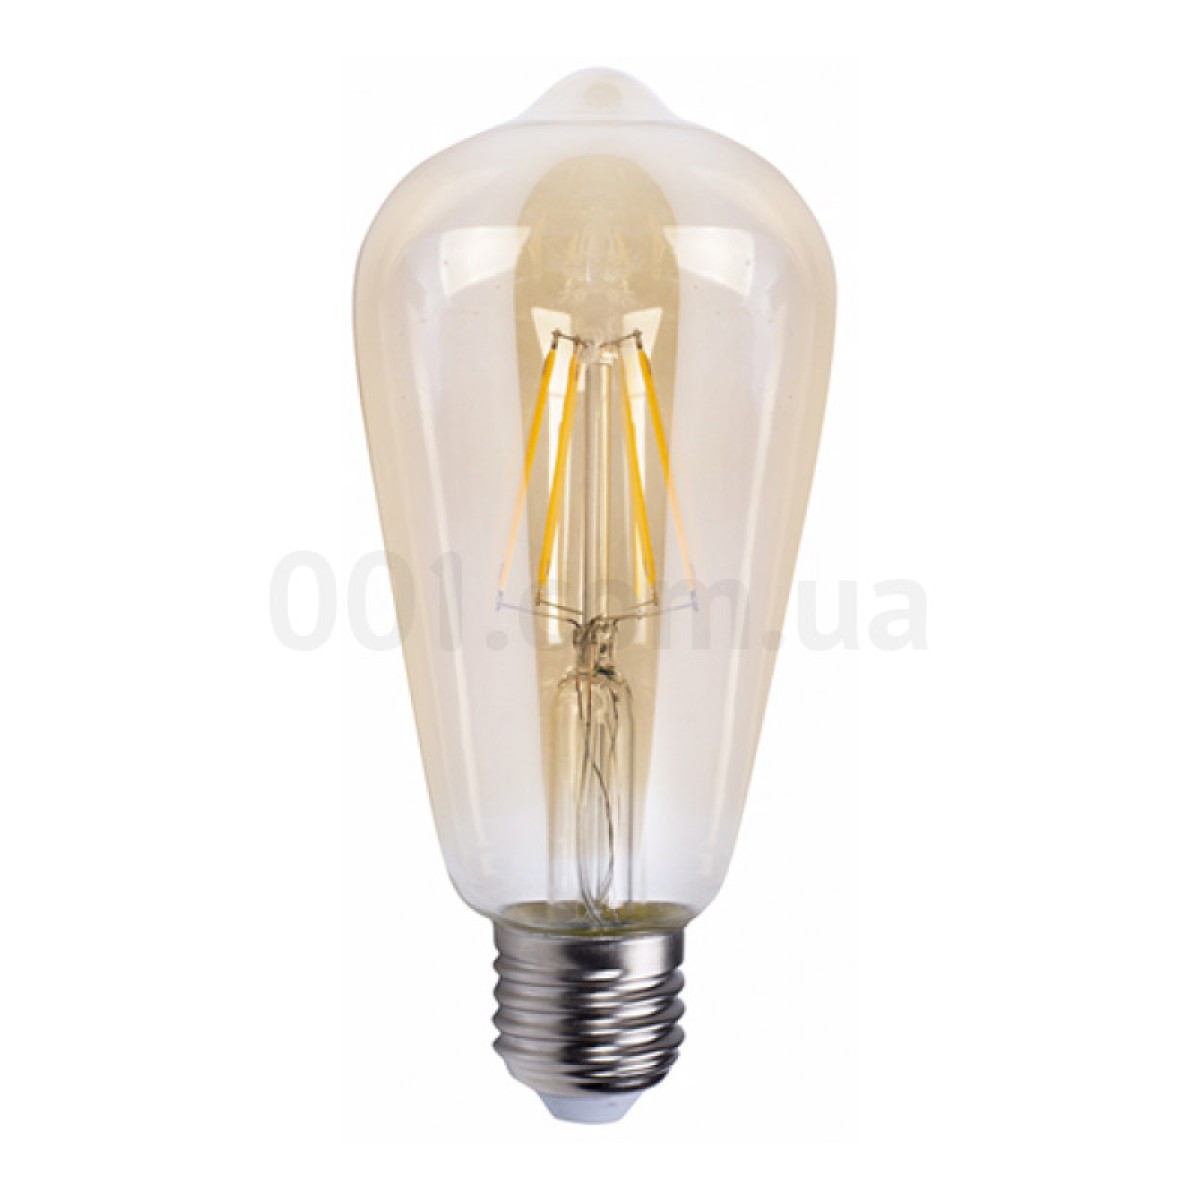 Світлодіодна лампа LB-764 ST64 філамент золото 4Вт 2700K E27, Feron 256_256.jpg